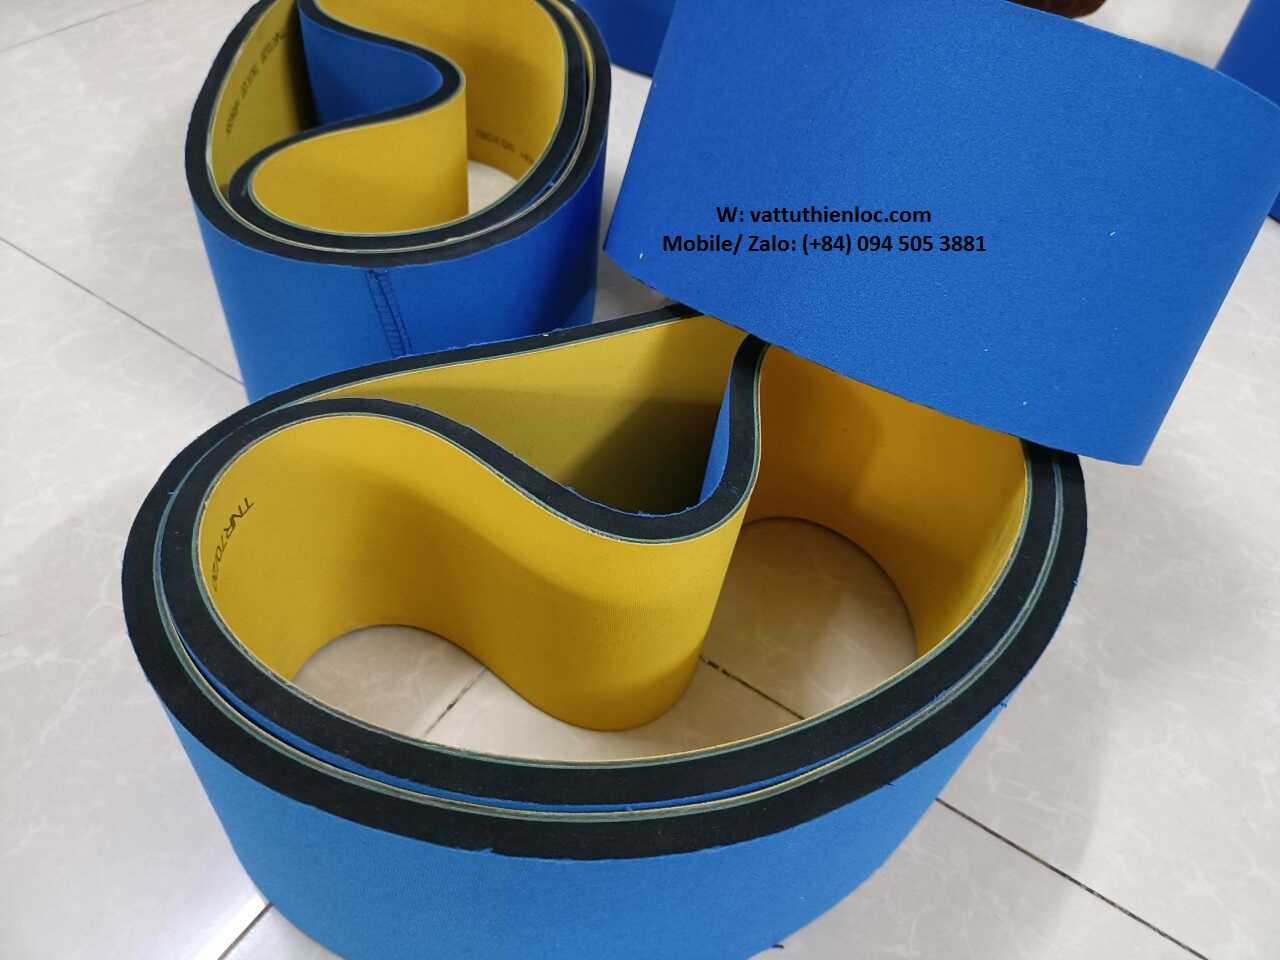 Dây đai xanh vàng đắp mút xốp xanh dầy 6-8mm, dùng cho máy đóng gói sản phẩm.